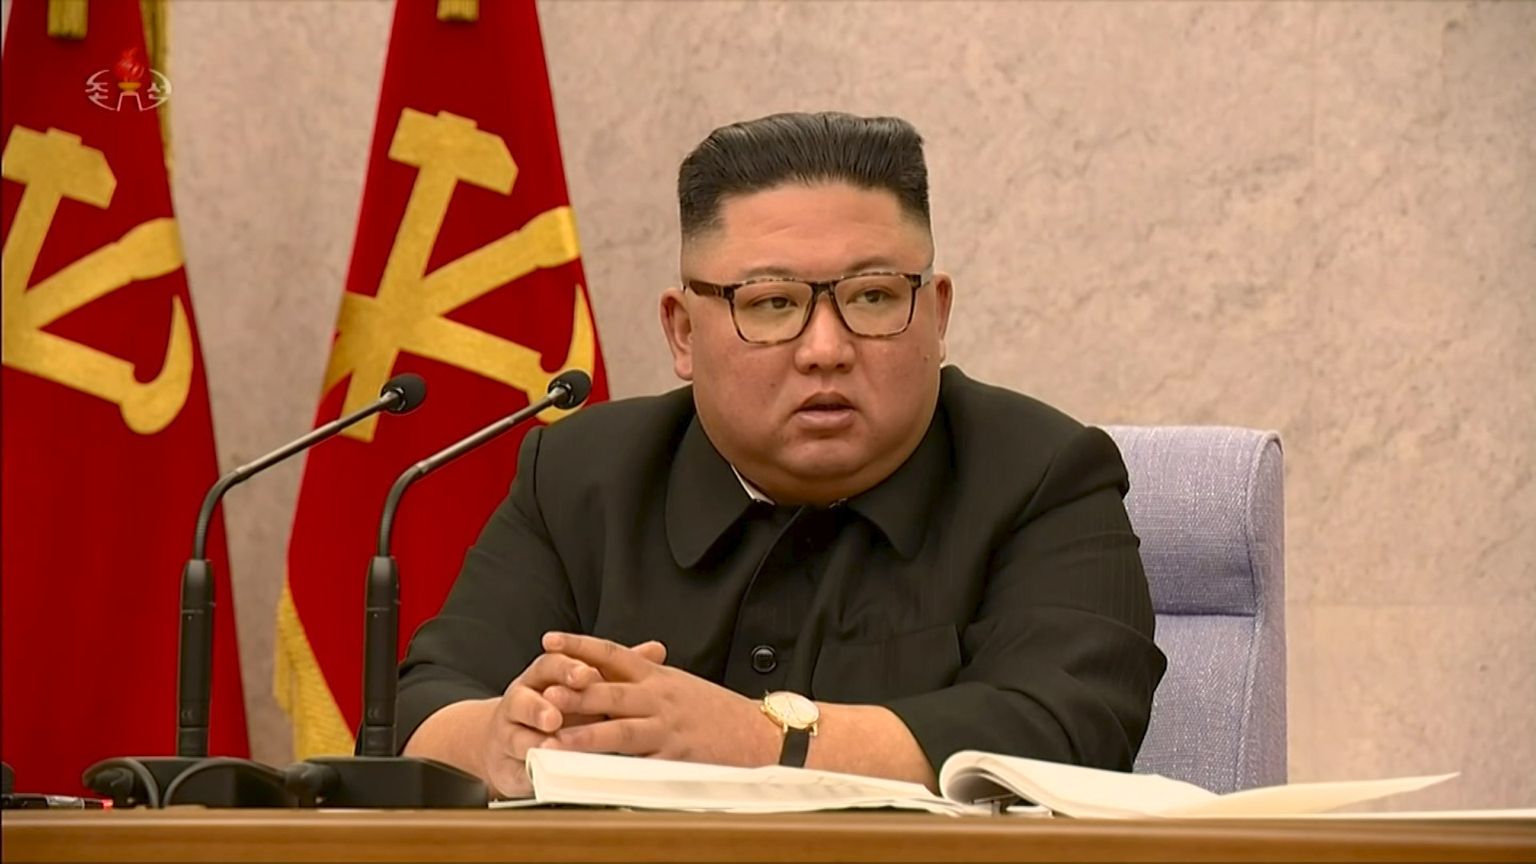 Põhja-Korea liider Kim Jong-un võimupartei keskkomitee istungil 2021. aasta veebruaris.